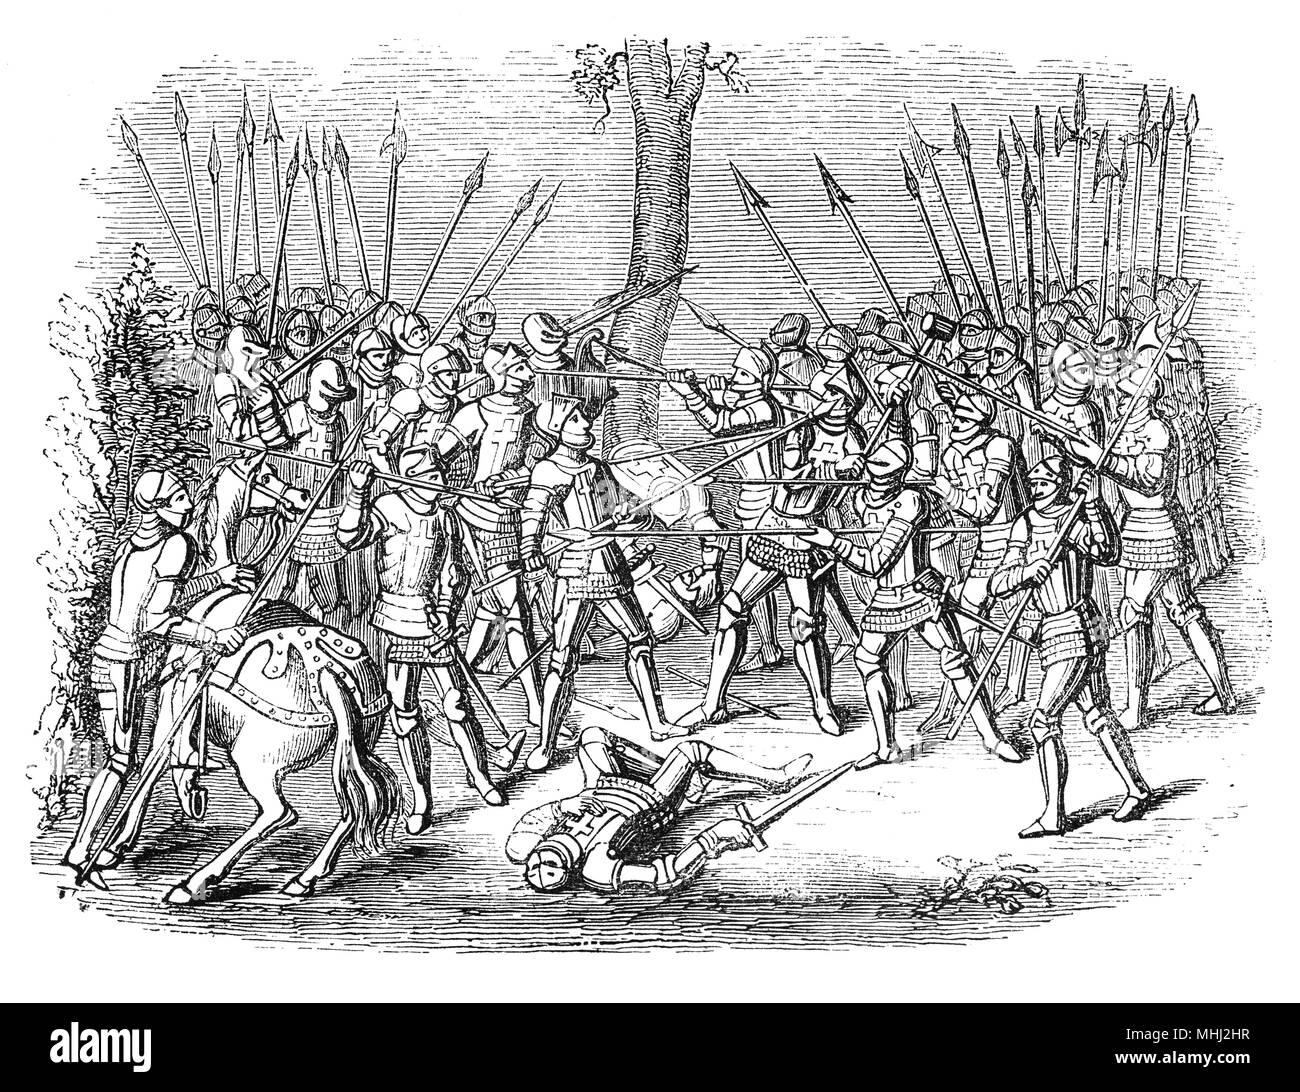 La mischia era un tipo di simulazioni di combattimento in tornei medievali con lo scopo di frantumarsi nel nemico ammassato in formazione, con lo scopo di rigettarli o rompere i loro ranghi. Il torneo ha avuto una rinascita di popolarità in Inghilterra nella prima metà del XIV secolo, tuttavia è morto durante il regno di Edoardo III che ha incoraggiato il movimento verso il fasto e una predominanza della giostra in suo eventi sponsorizzati. In ultimo vero torneo tenutasi in Inghilterra nel 1342 a Dunstable, la mêlée è stato rinviato così a lungo da giostre che il sole stava affondando da tempo le linee caricate. Foto Stock